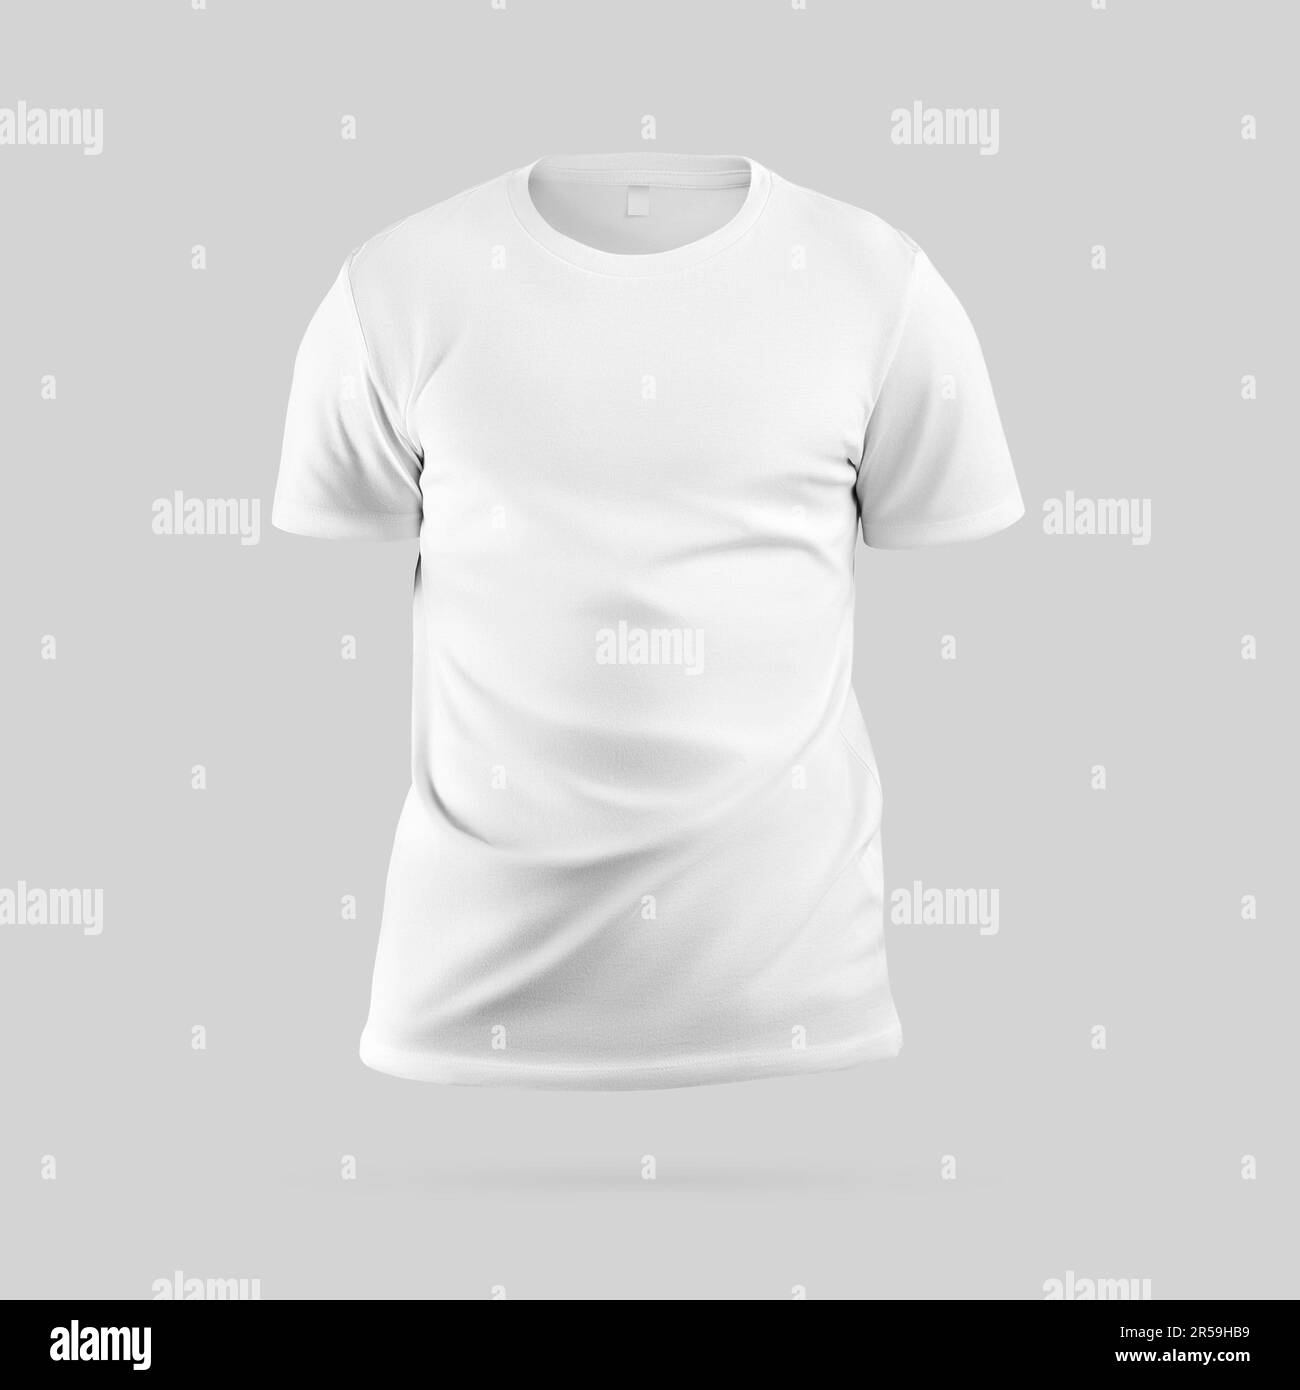 Modello 3D per t-shirt bianca alla moda, abbigliamento da uomo con etichetta, collo rotondo, ombre, per design, stampa, fotografia del prodotto. Maglia texture Foto Stock